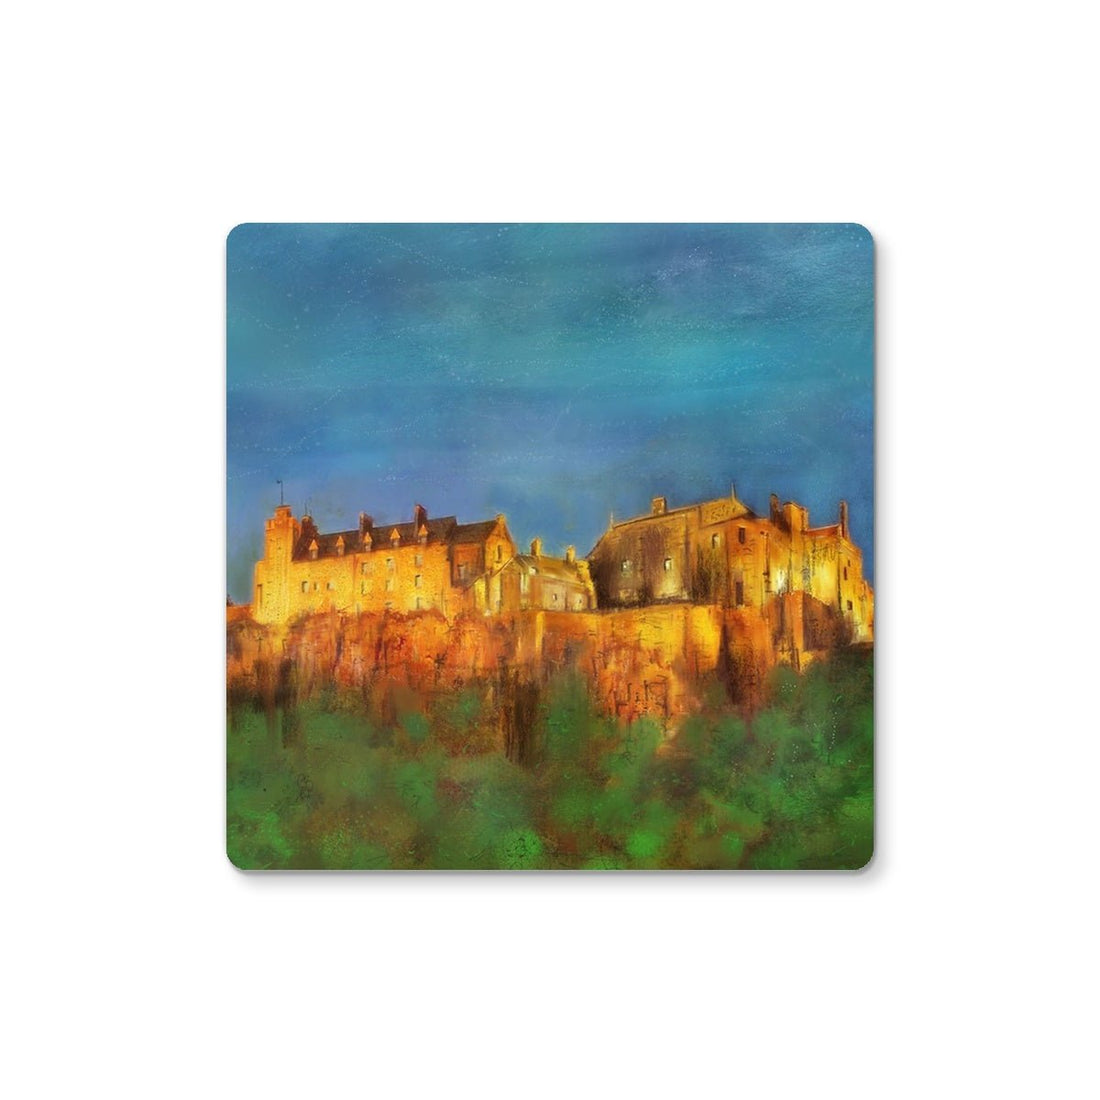 Stirling Castle Art Gifts Coaster